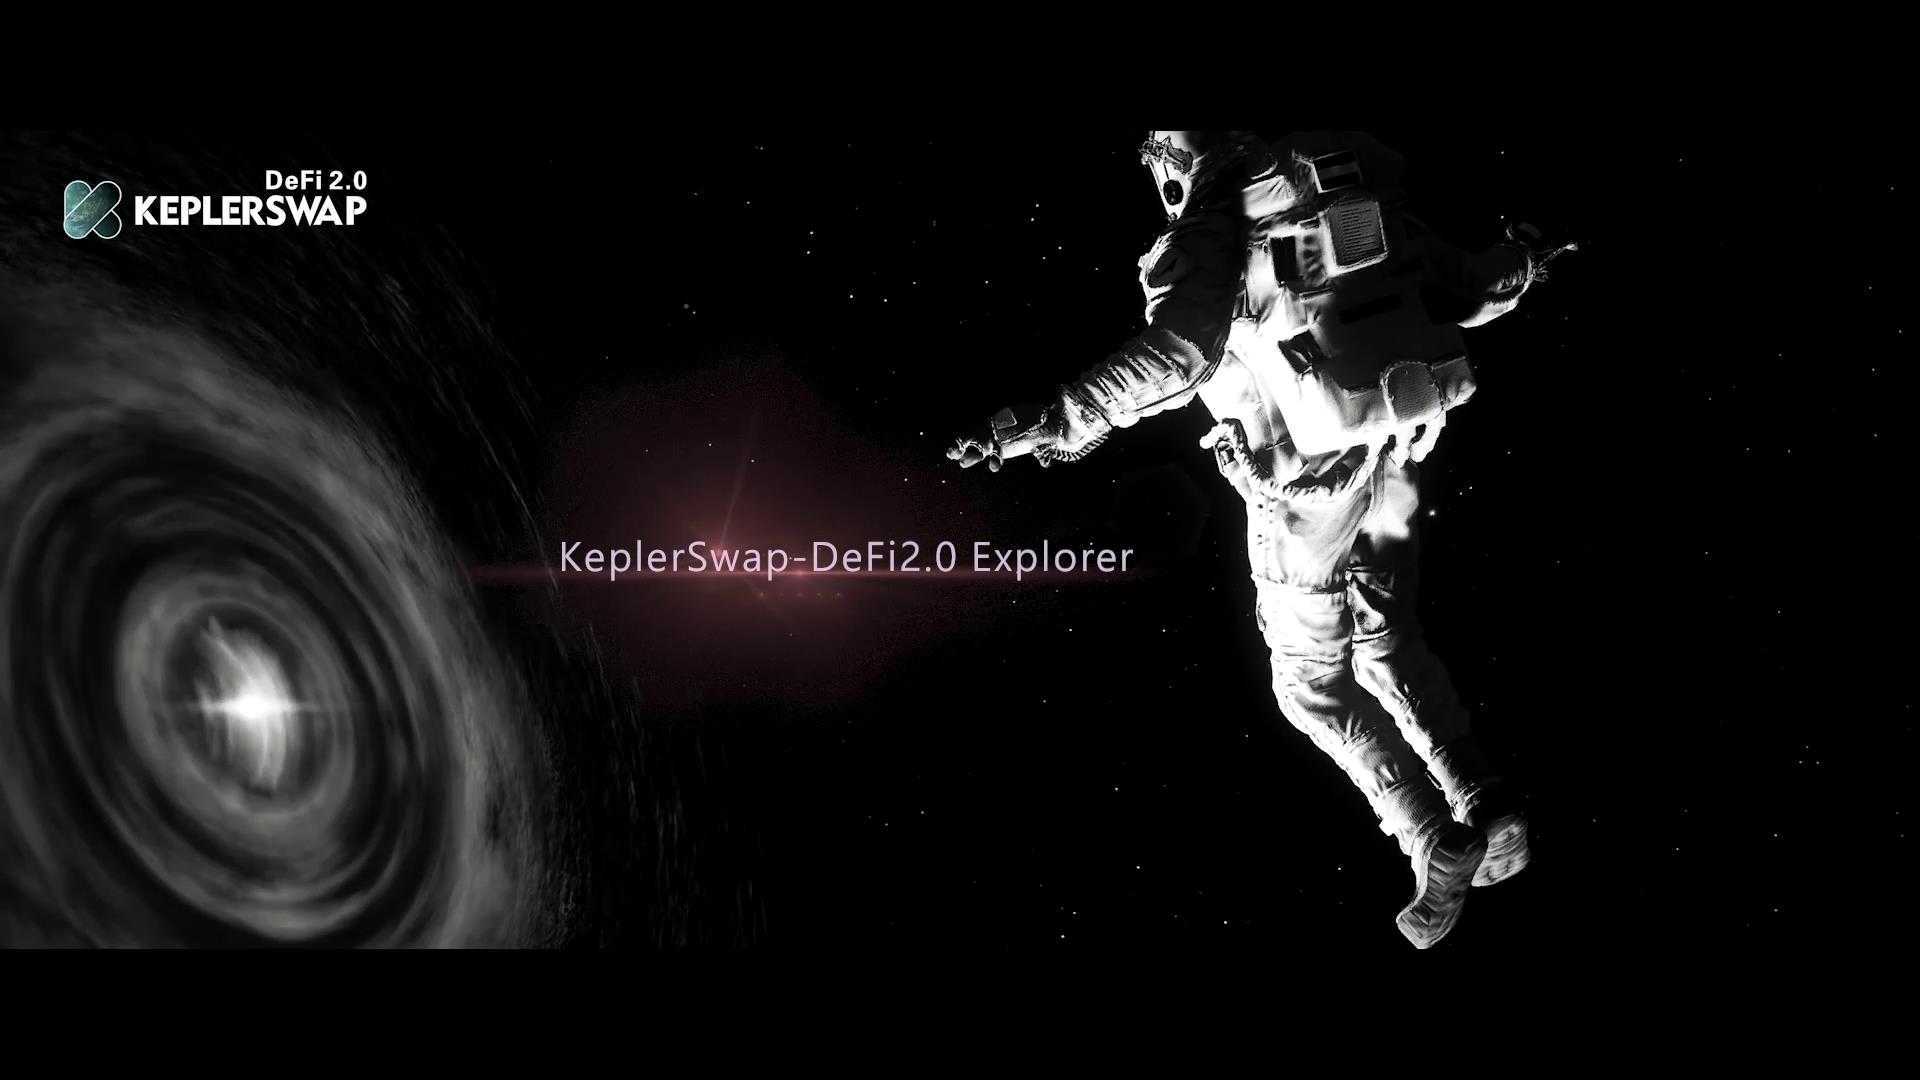 Global Launch of KeplerSwap